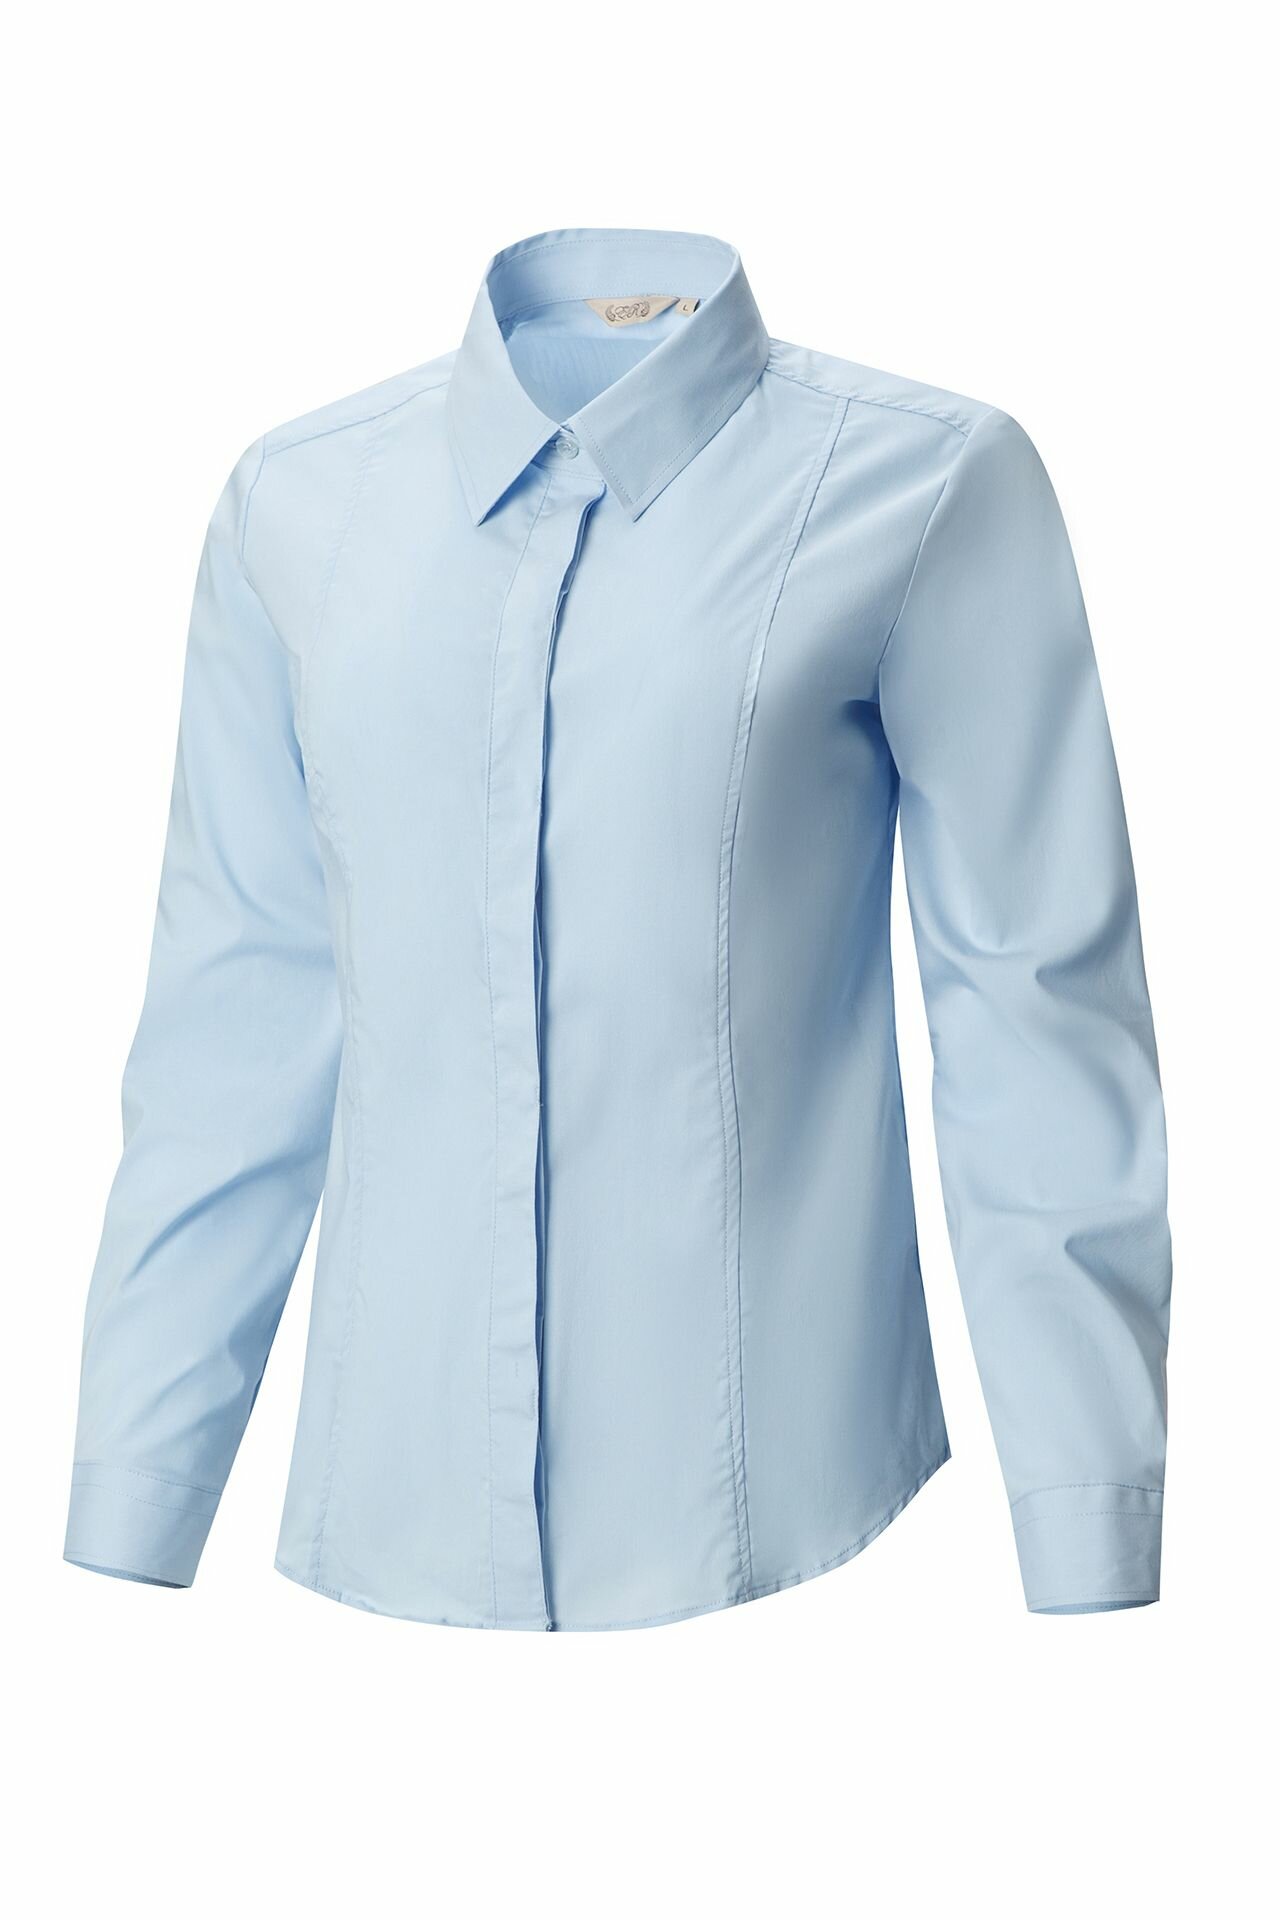 Рубашка женская El-Risto удлиненная голубой 46(L)